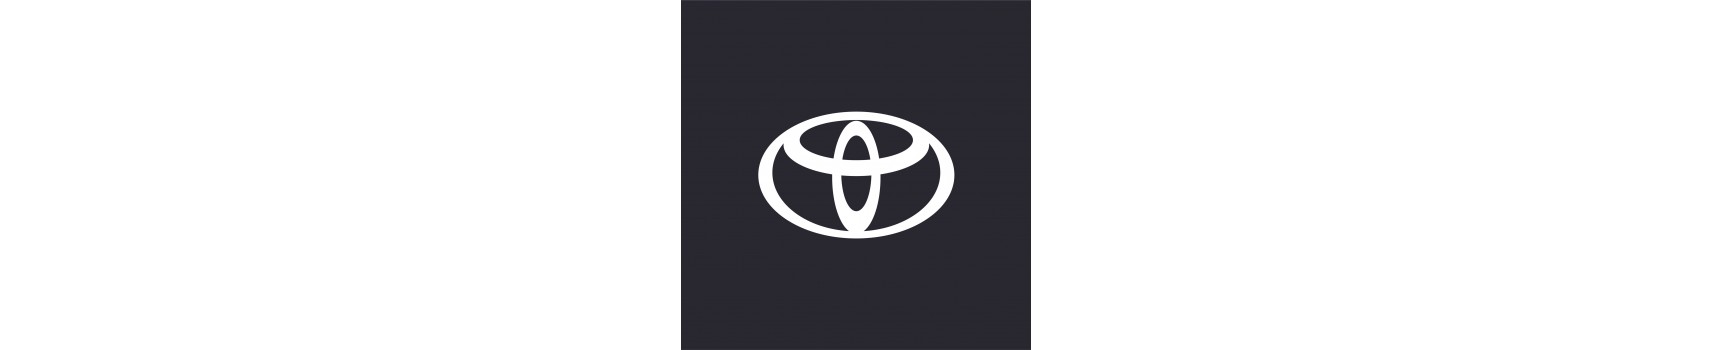 Toyota akcesoria terenowe, wyposażenie offroad do Toyoty